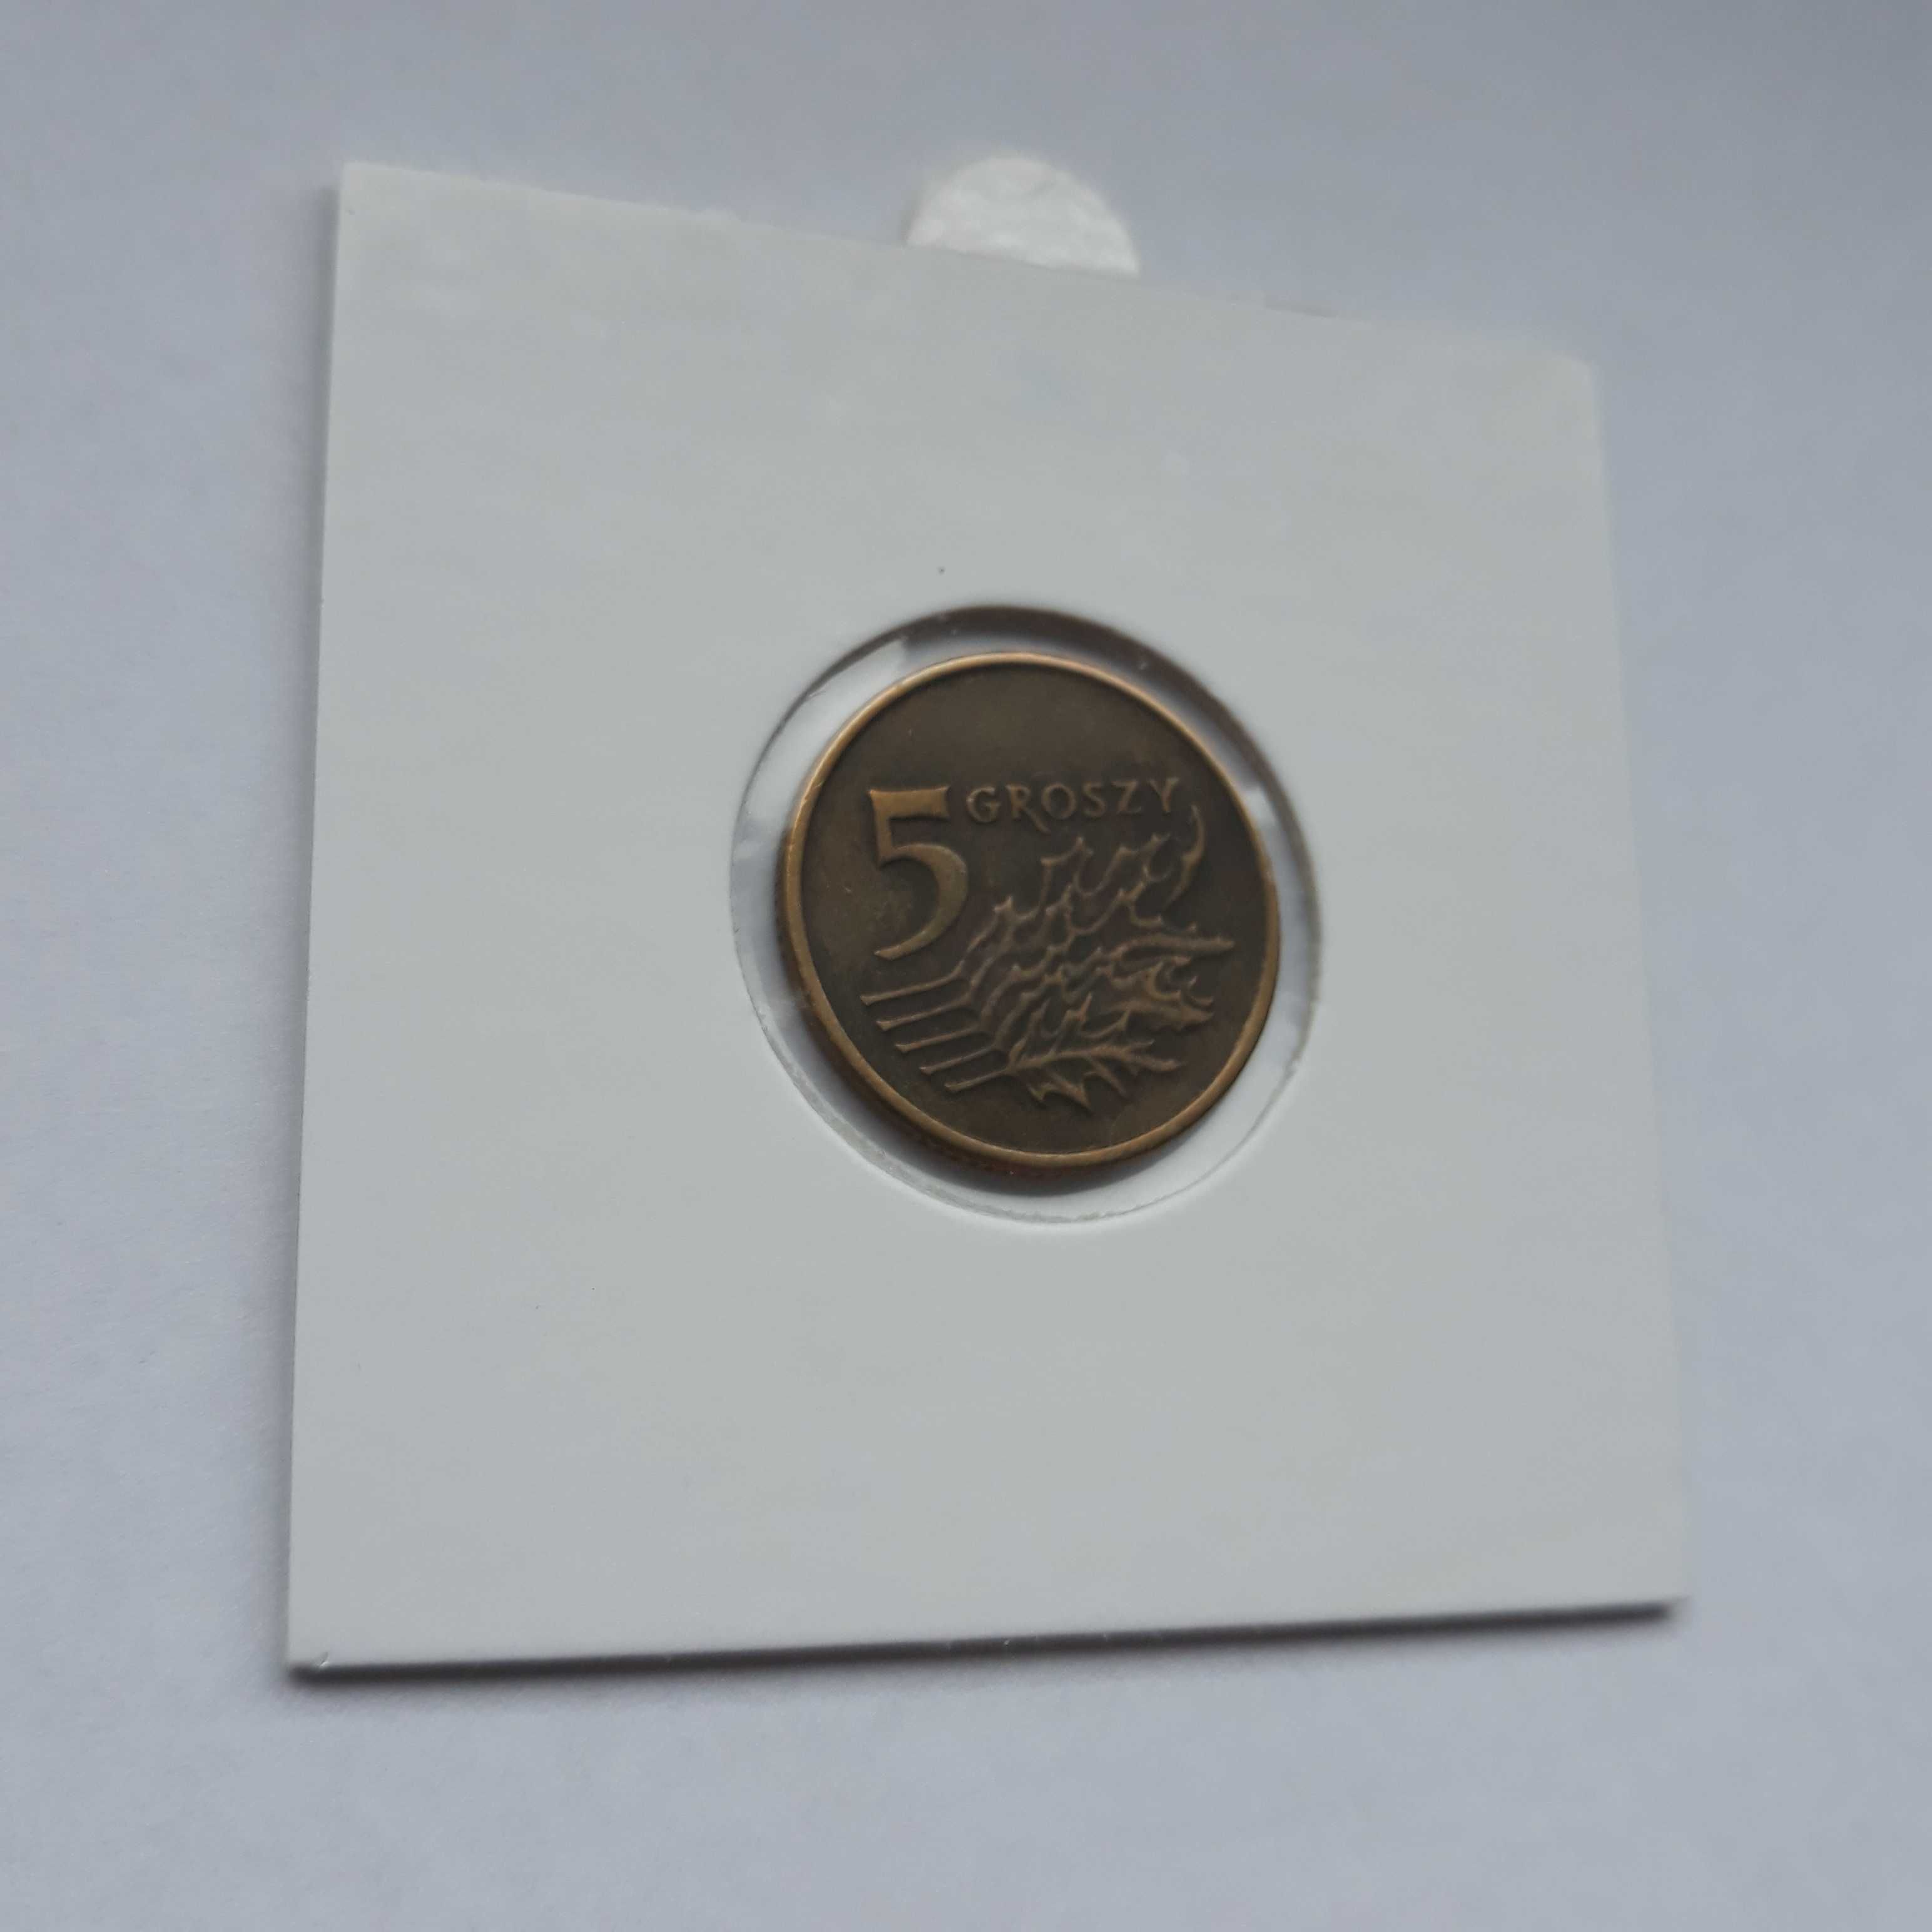 5 groszy 1993 - moneta nr.25